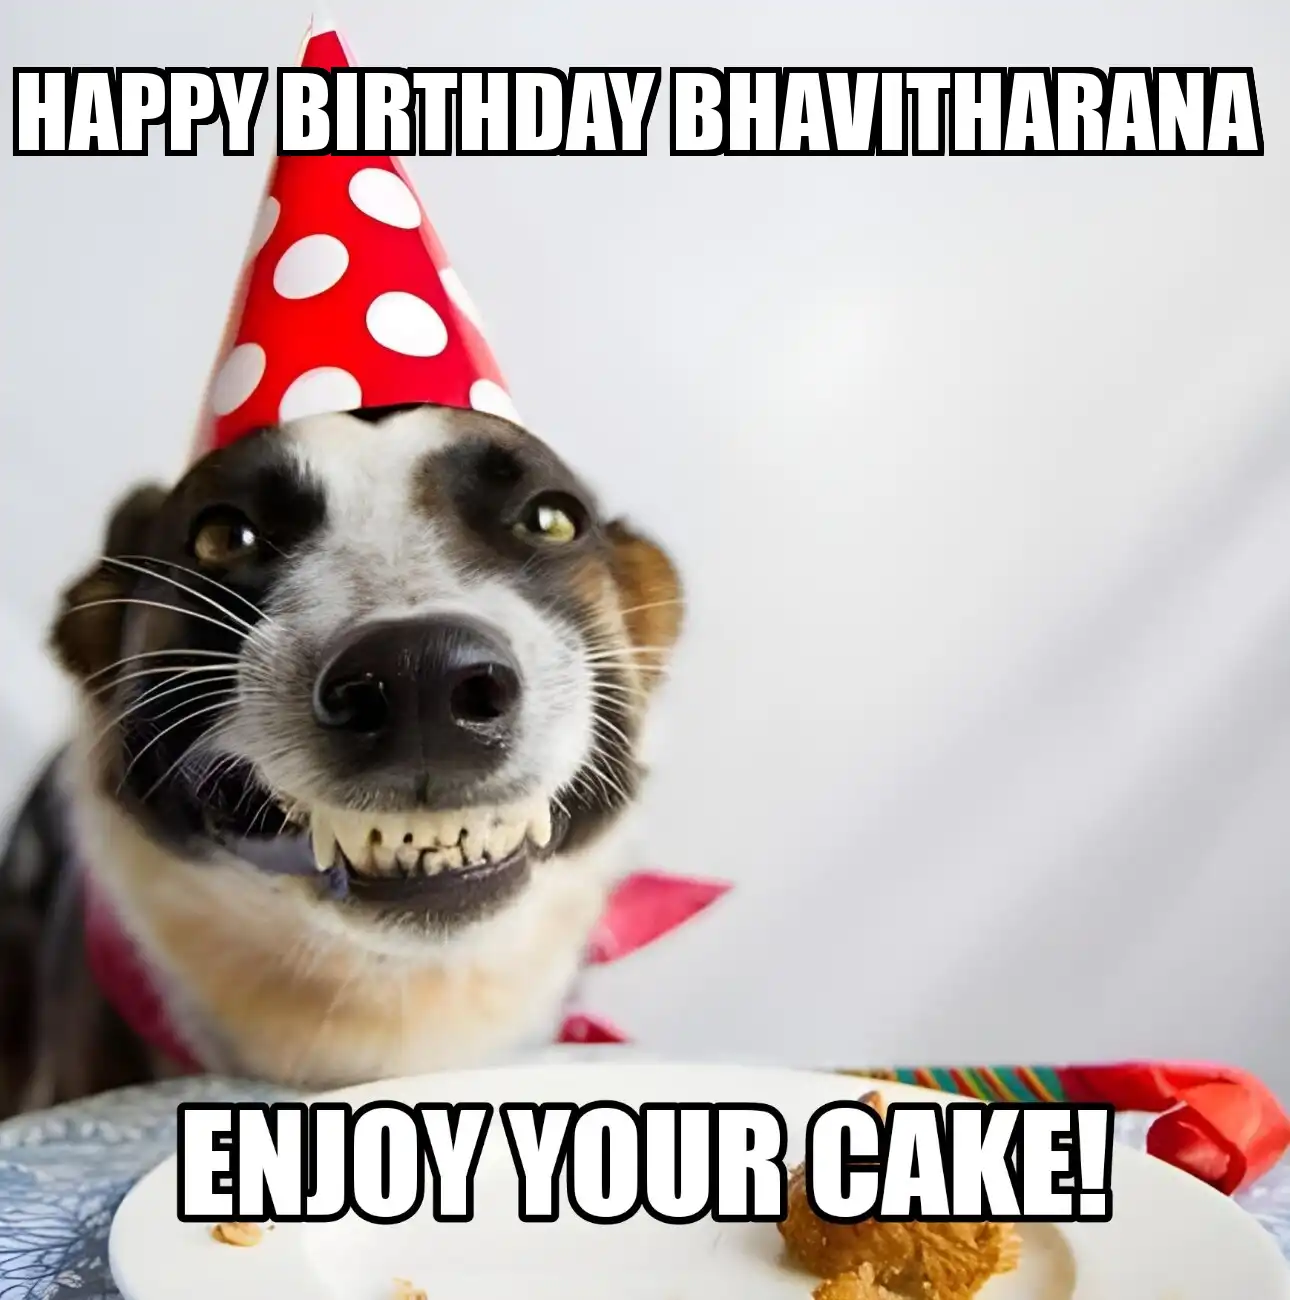 Happy Birthday Bhavitharana Enjoy Your Cake Dog Meme